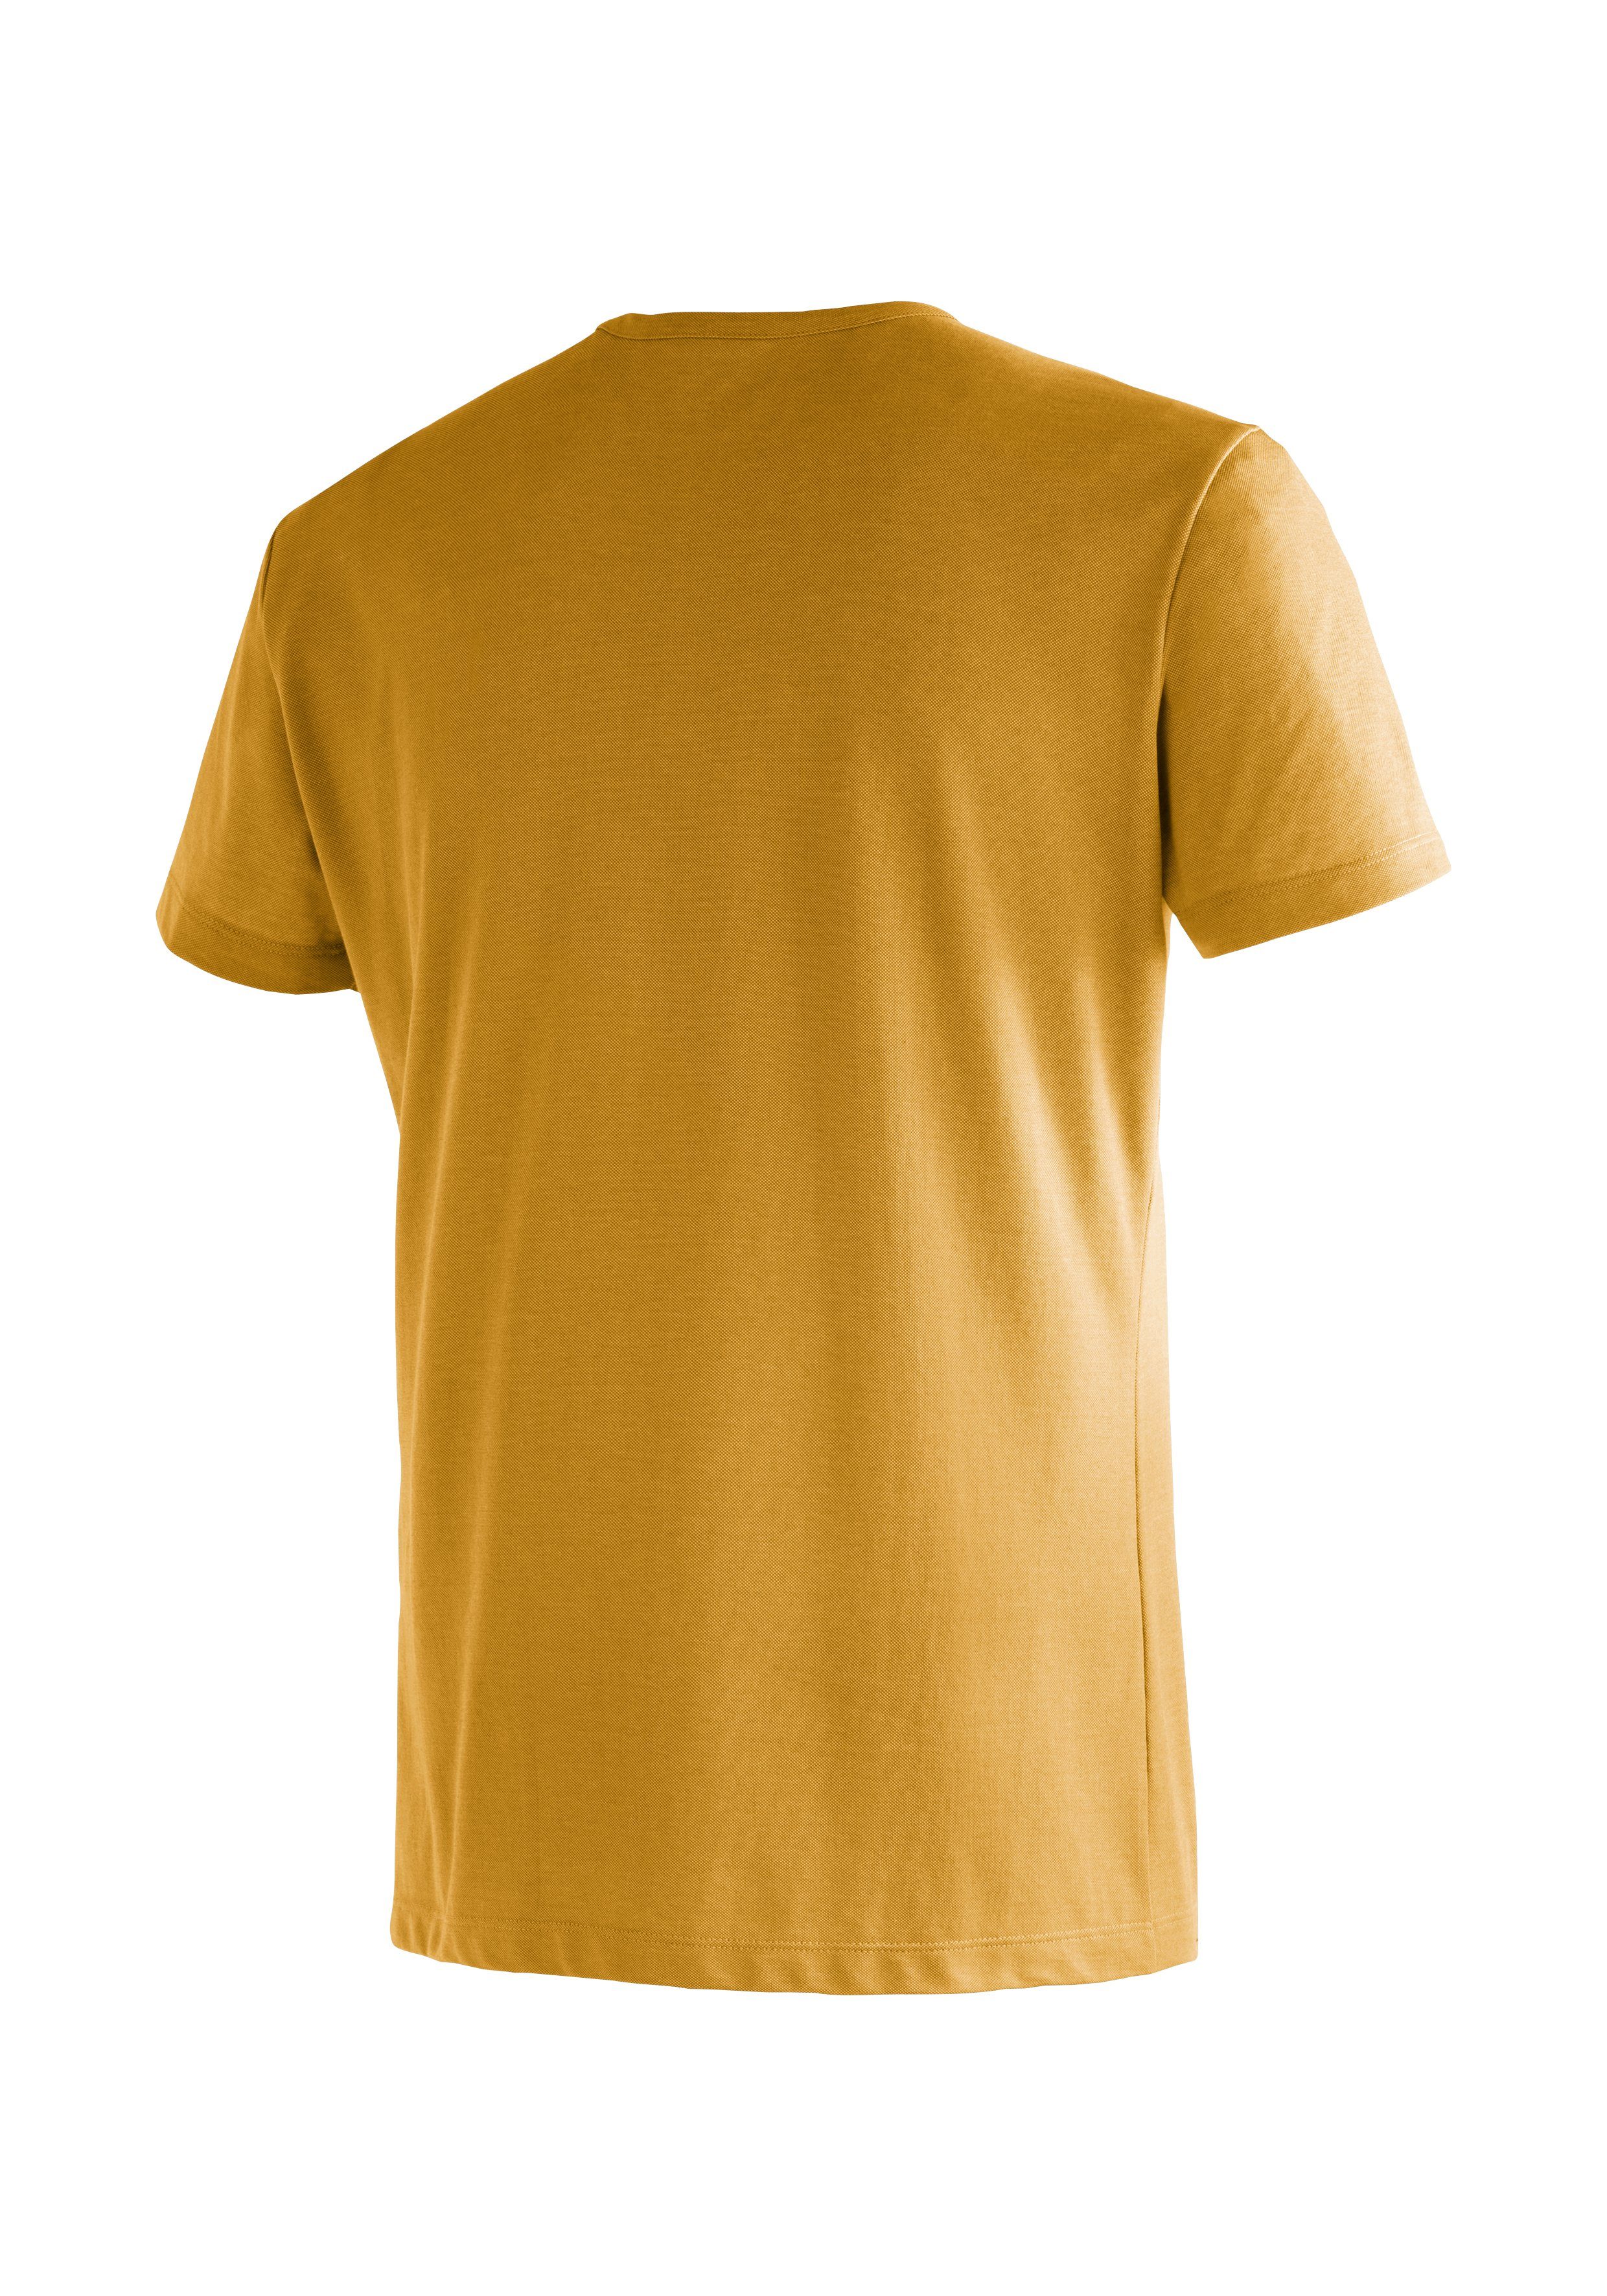 T-Shirt und Burgeis für Freizeit Sports Kurzarmshirt mit dunkelorange Maier Print Herren 17 M Wandern